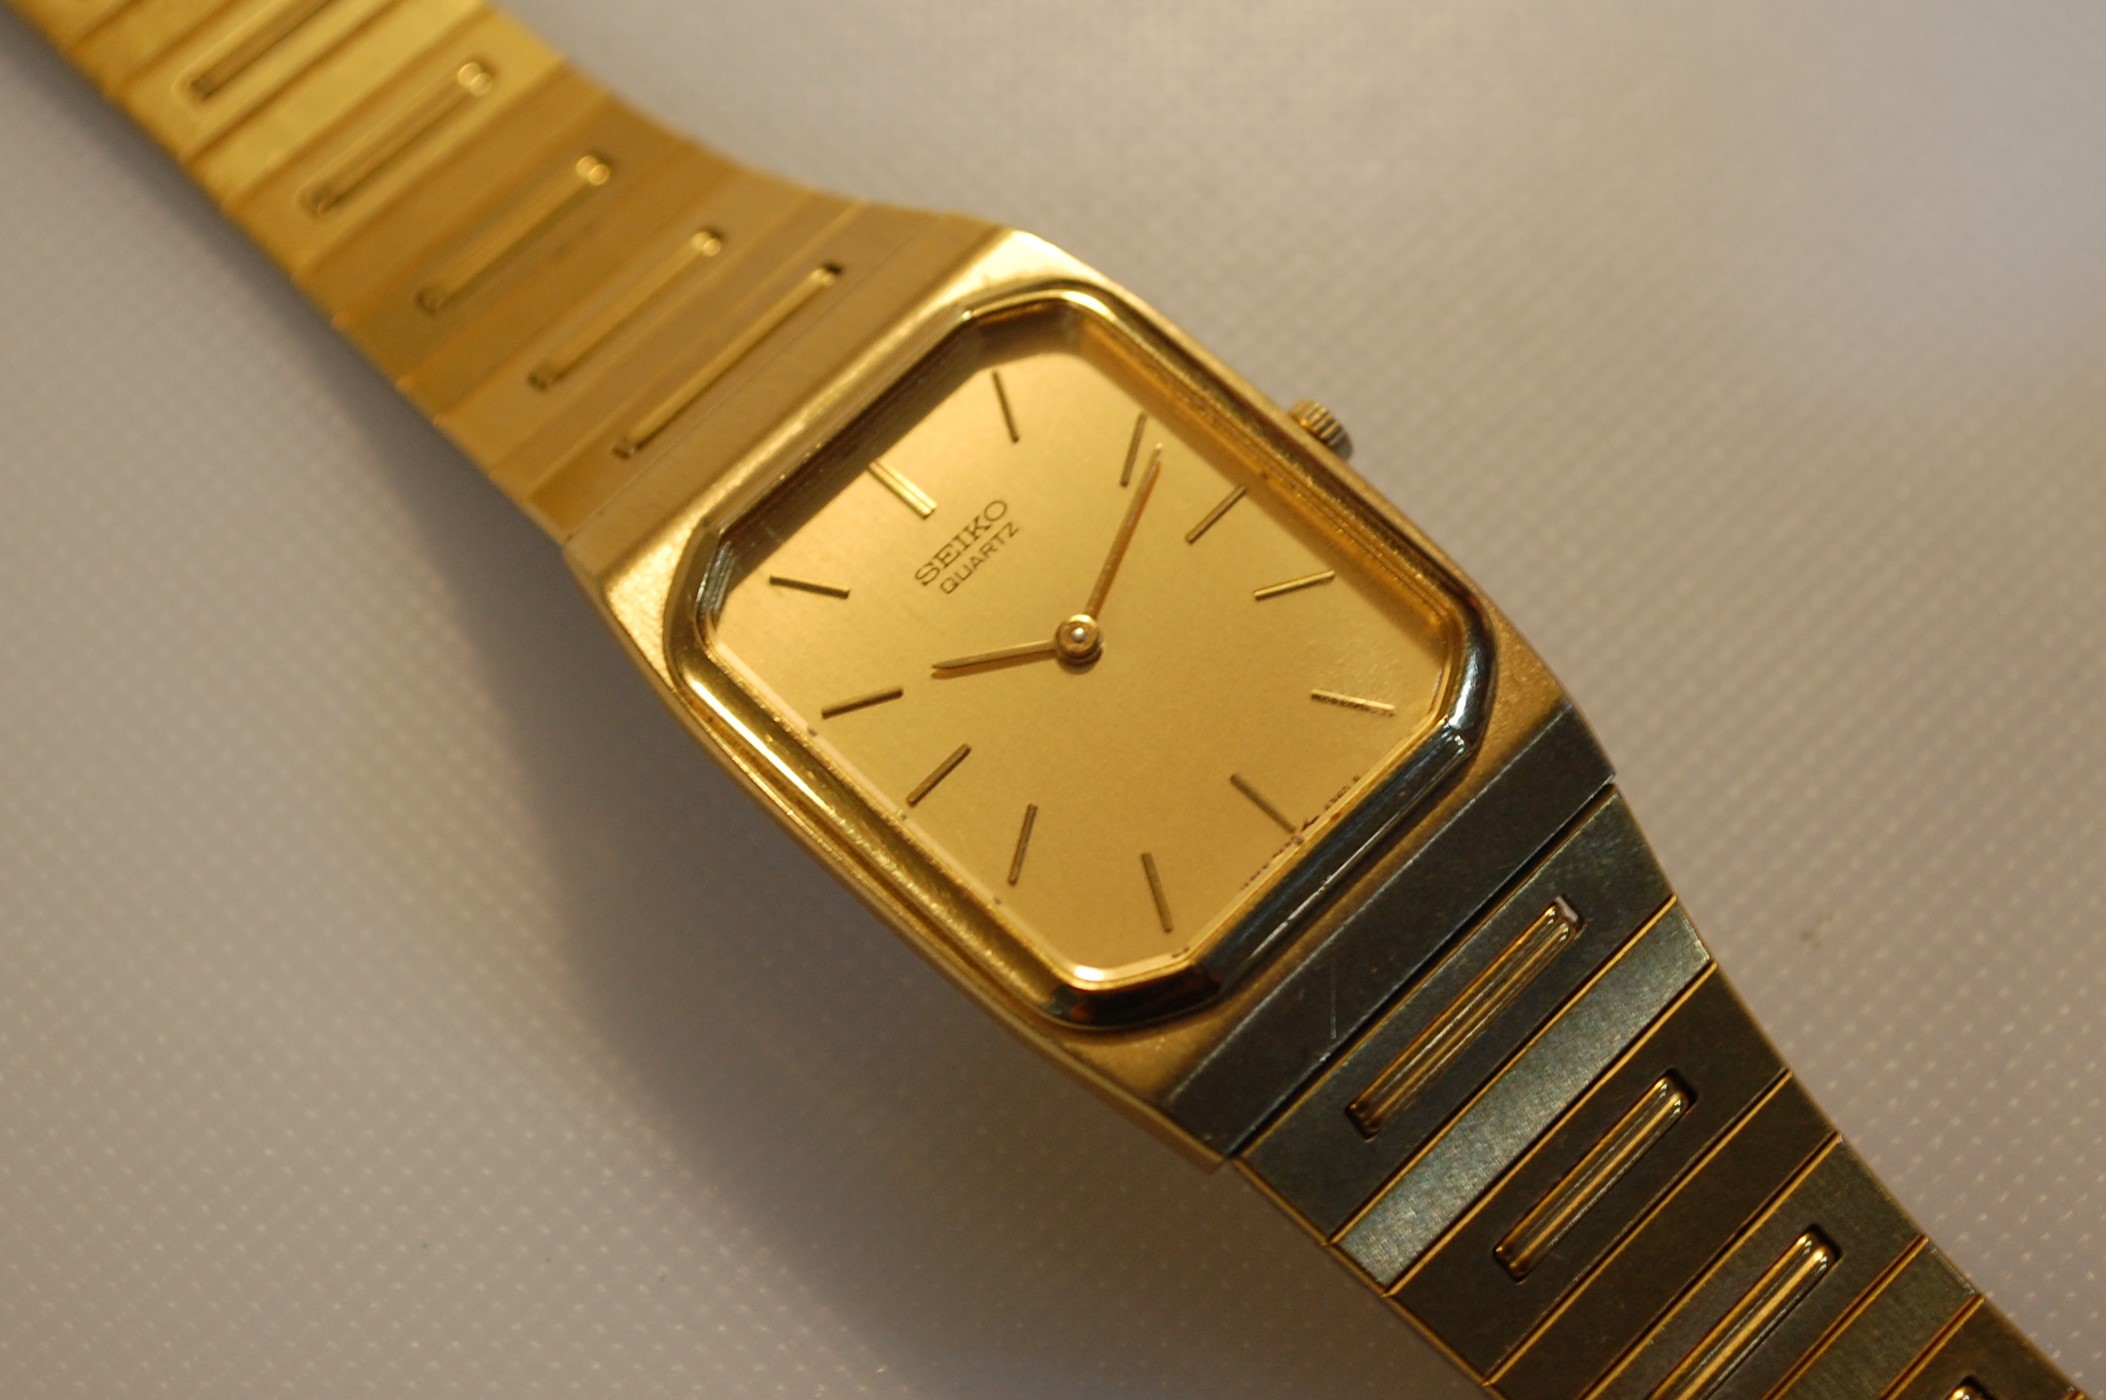 SOLD 1985 Seiko 7430-5910 slim vintage watch - Birth Year Watches